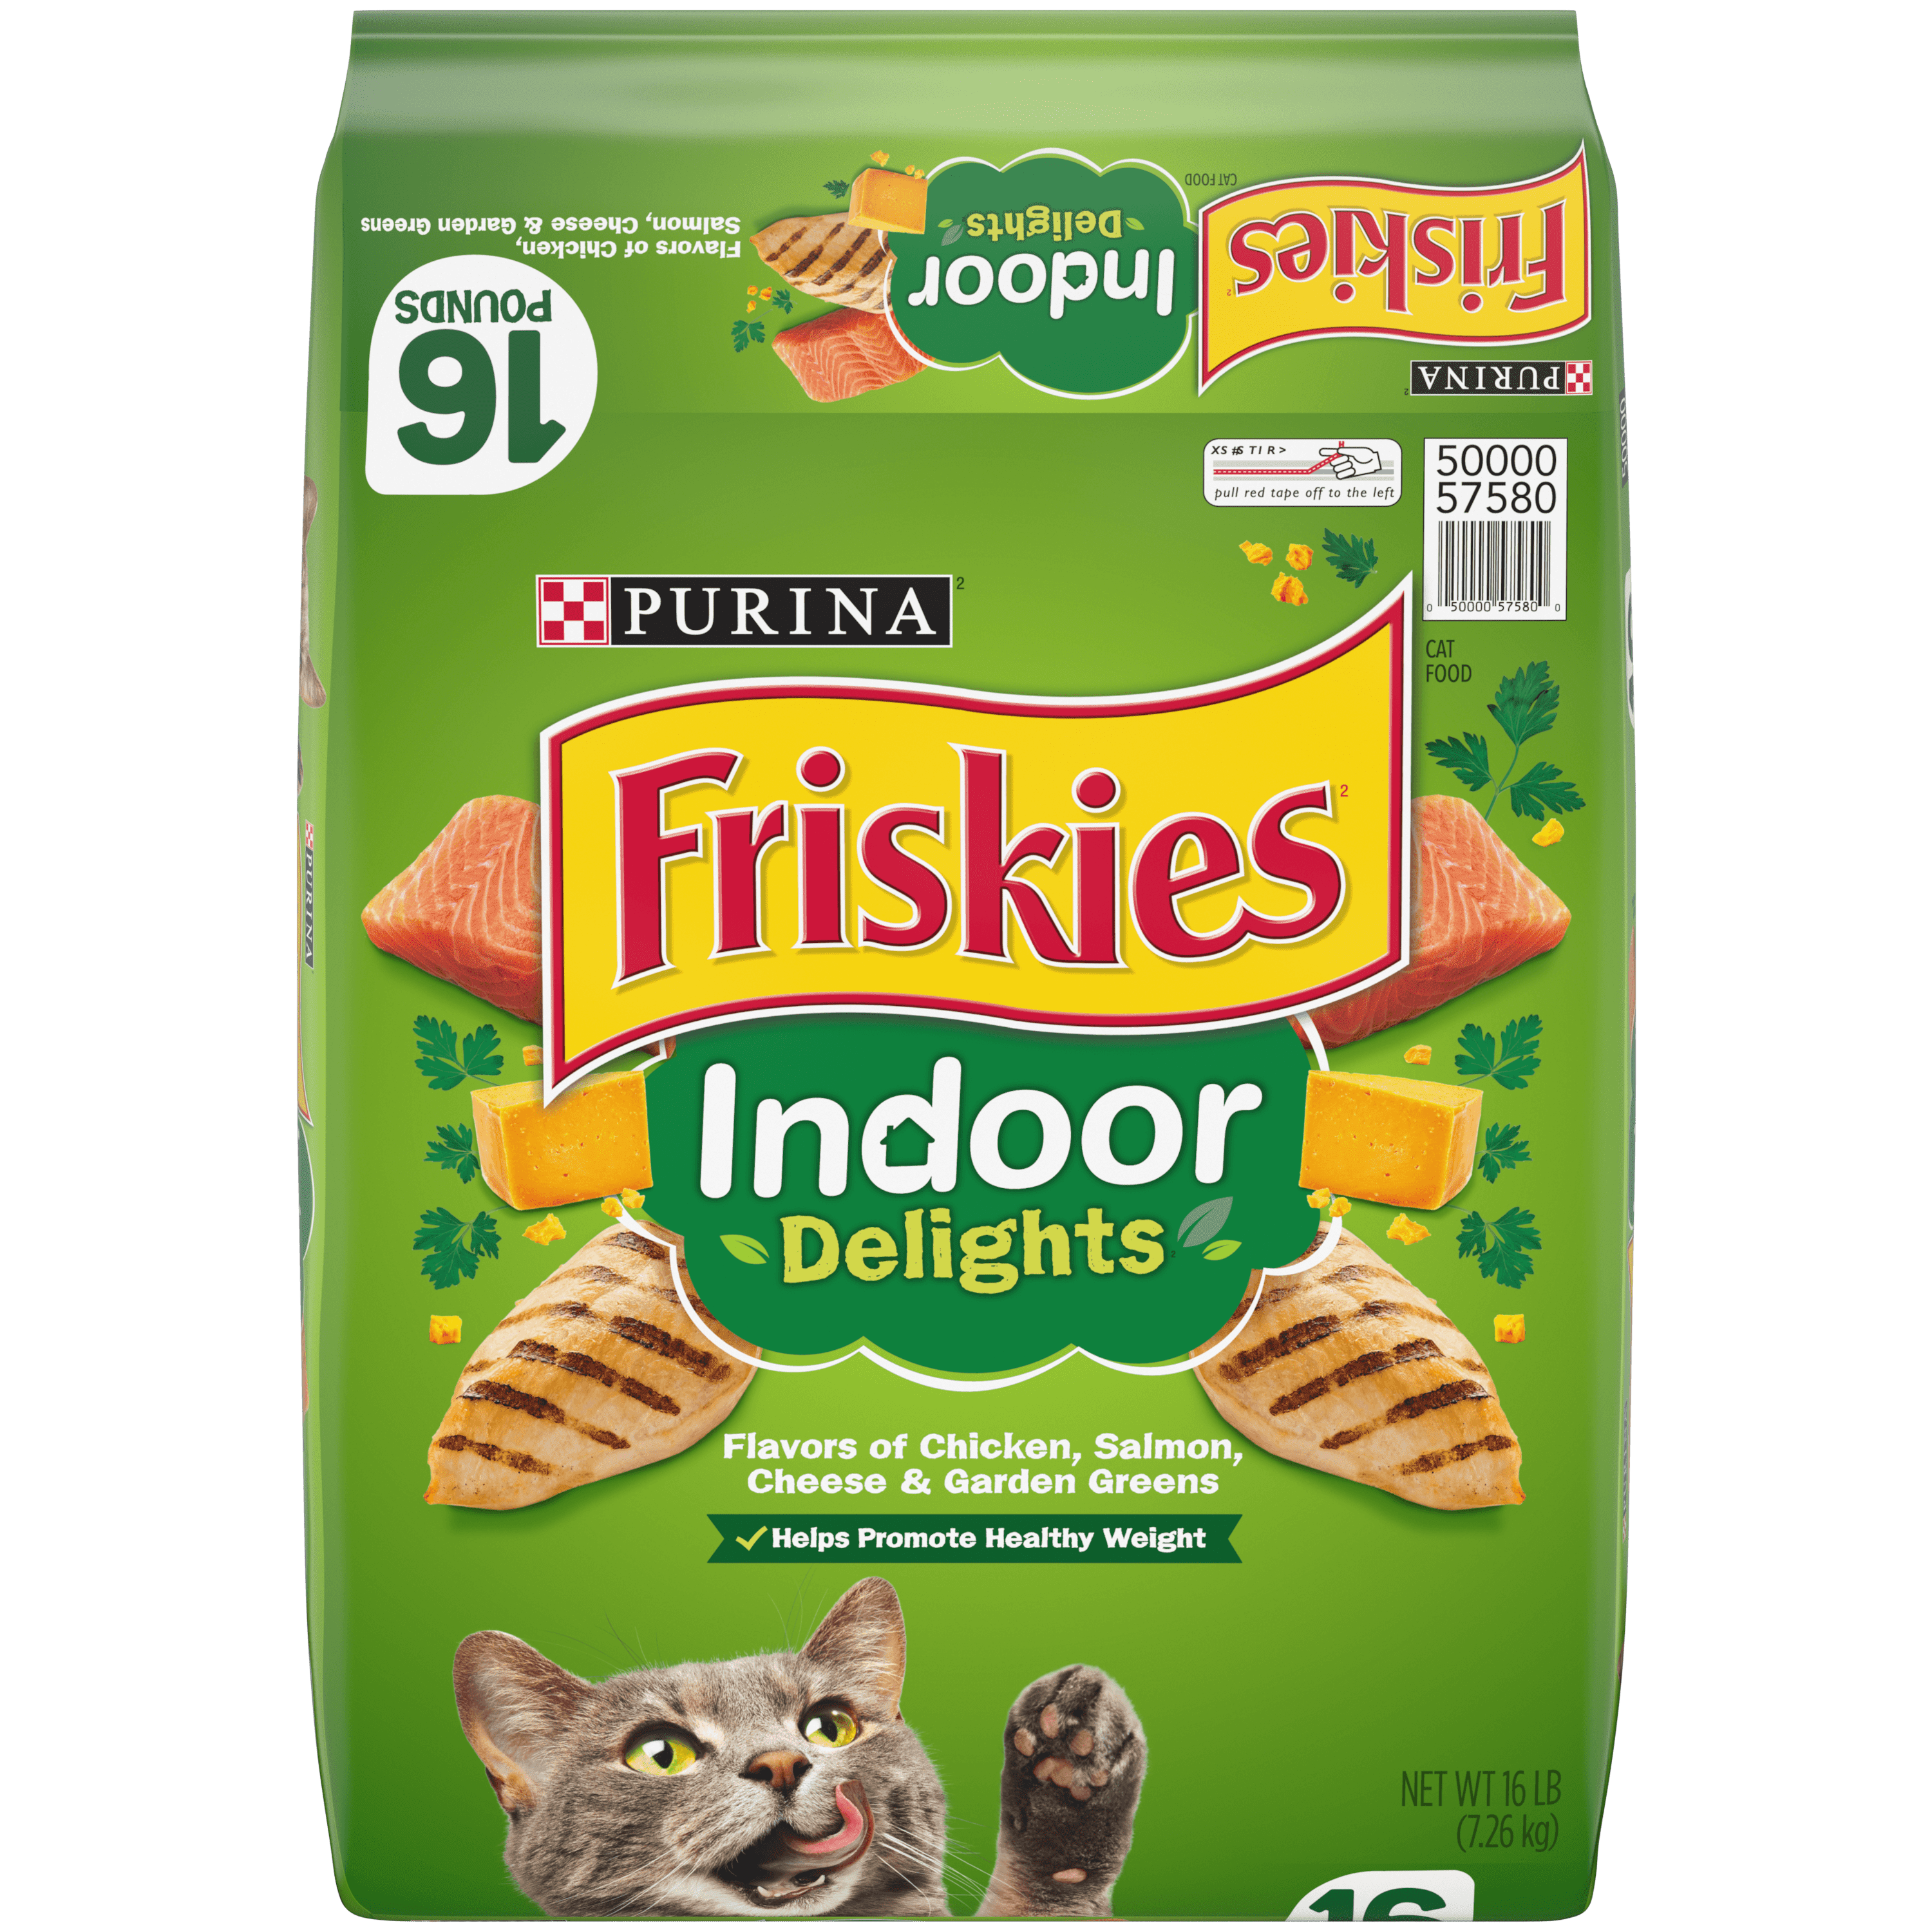 Friskies Indoor Dry Cat Food, Indoor Delights, 16 lb. Bag